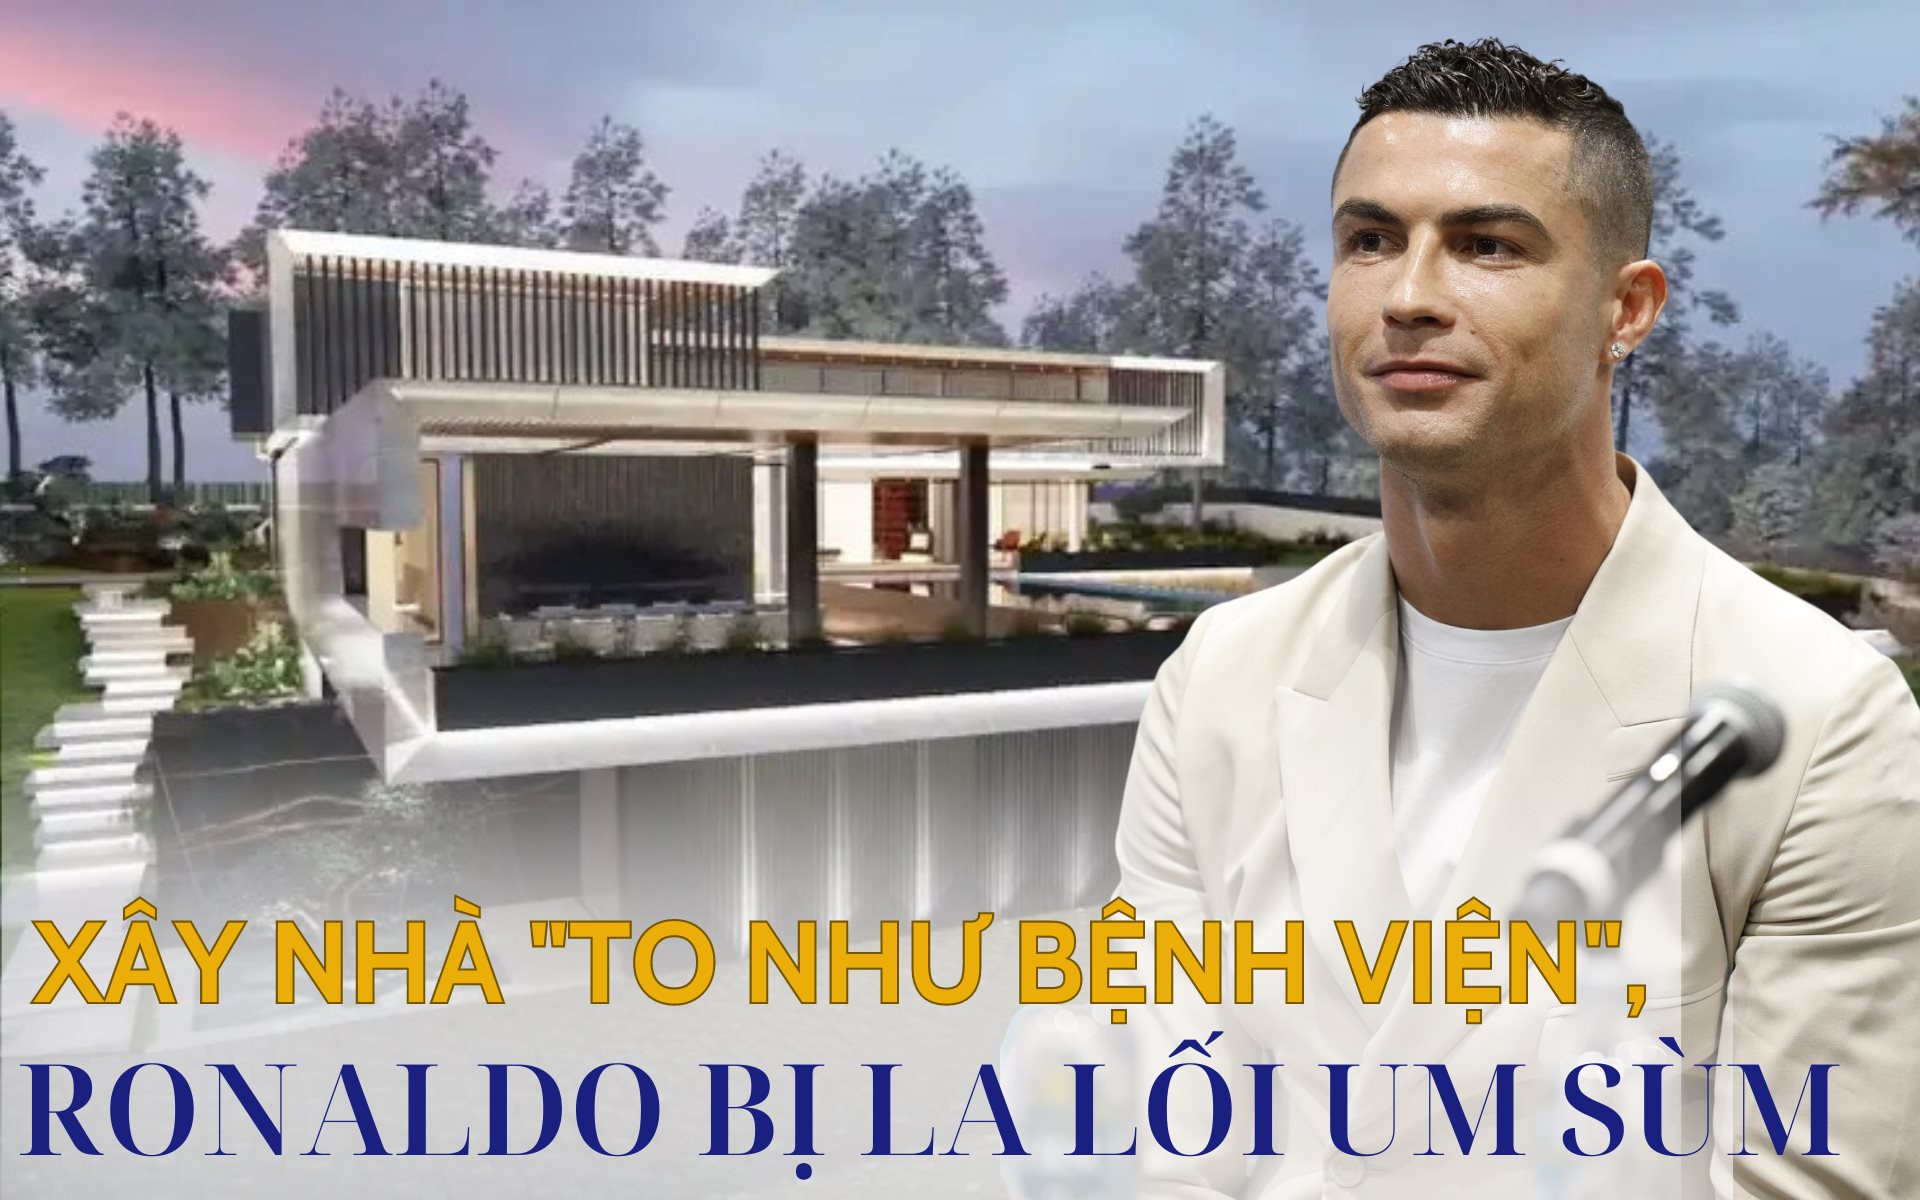 "Nỗi khổ" của triệu phú Ronaldo: Xây biệt thự hơn 820 tỷ đồng, to ngang bệnh viện nhưng bị hàng xóm la lối um sùm